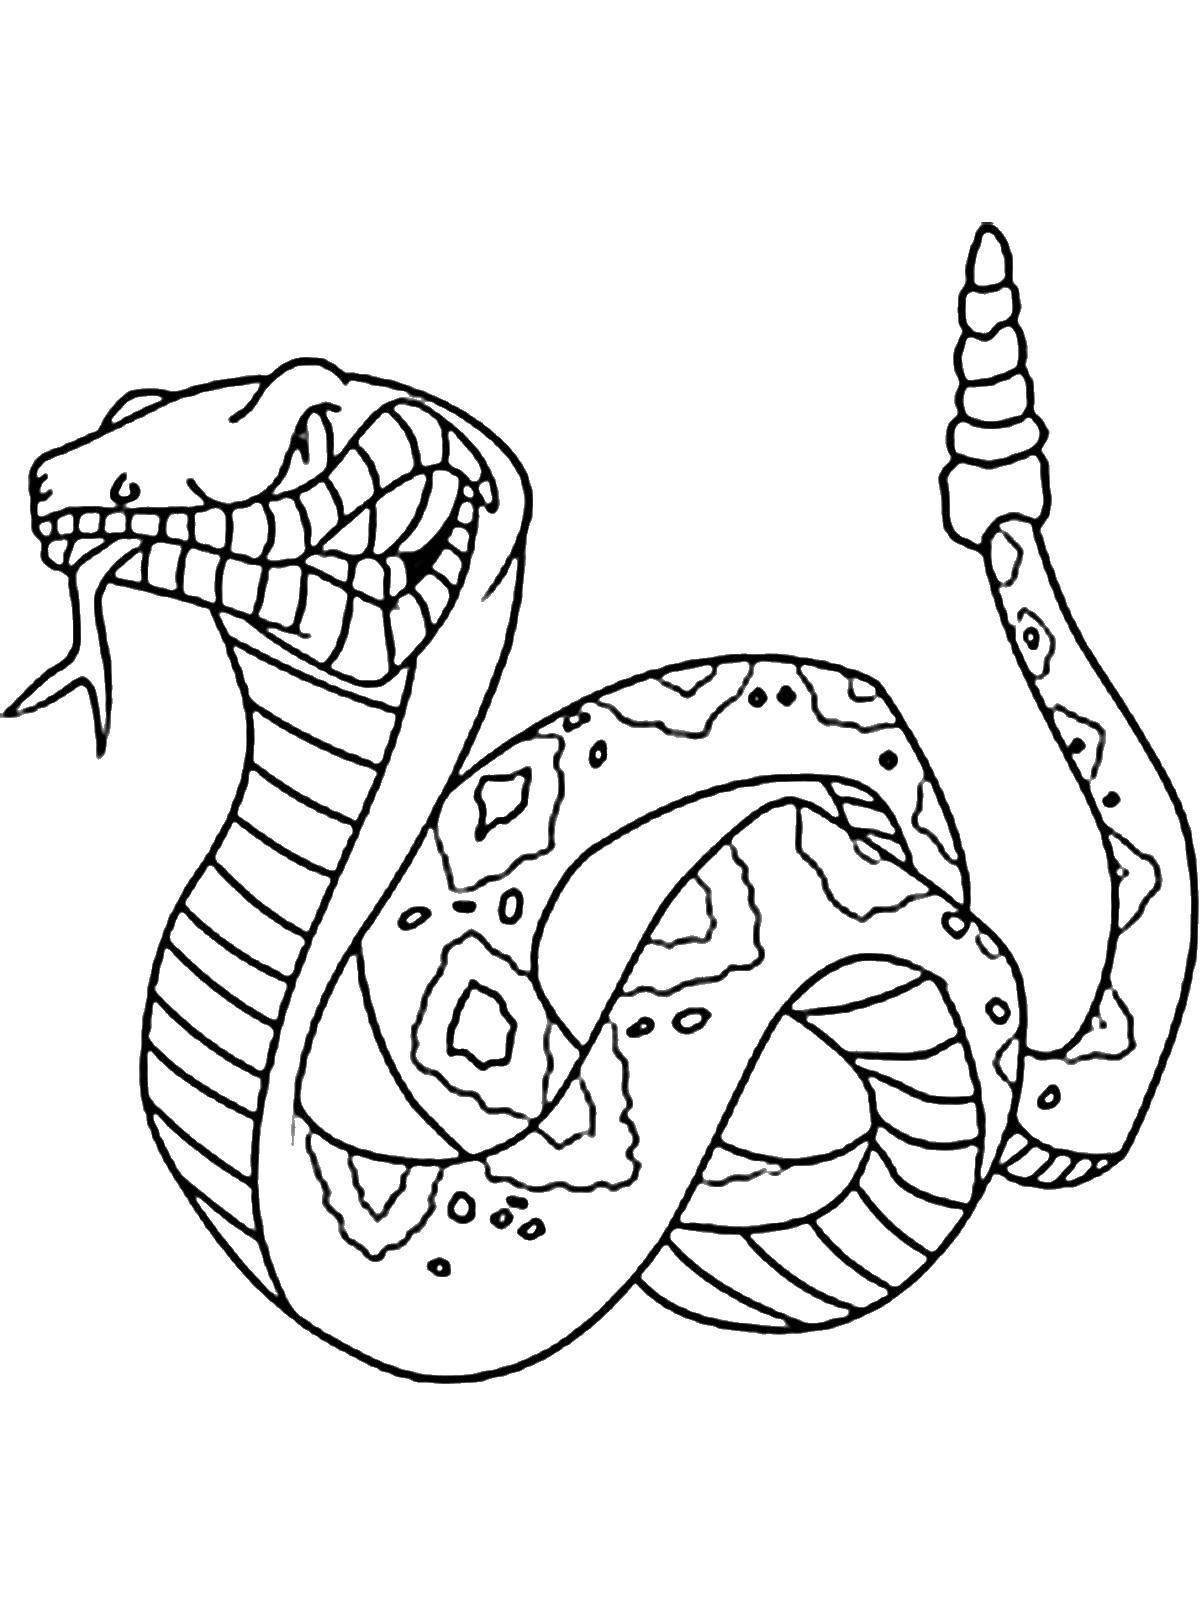 Великолепная раскраска кобра